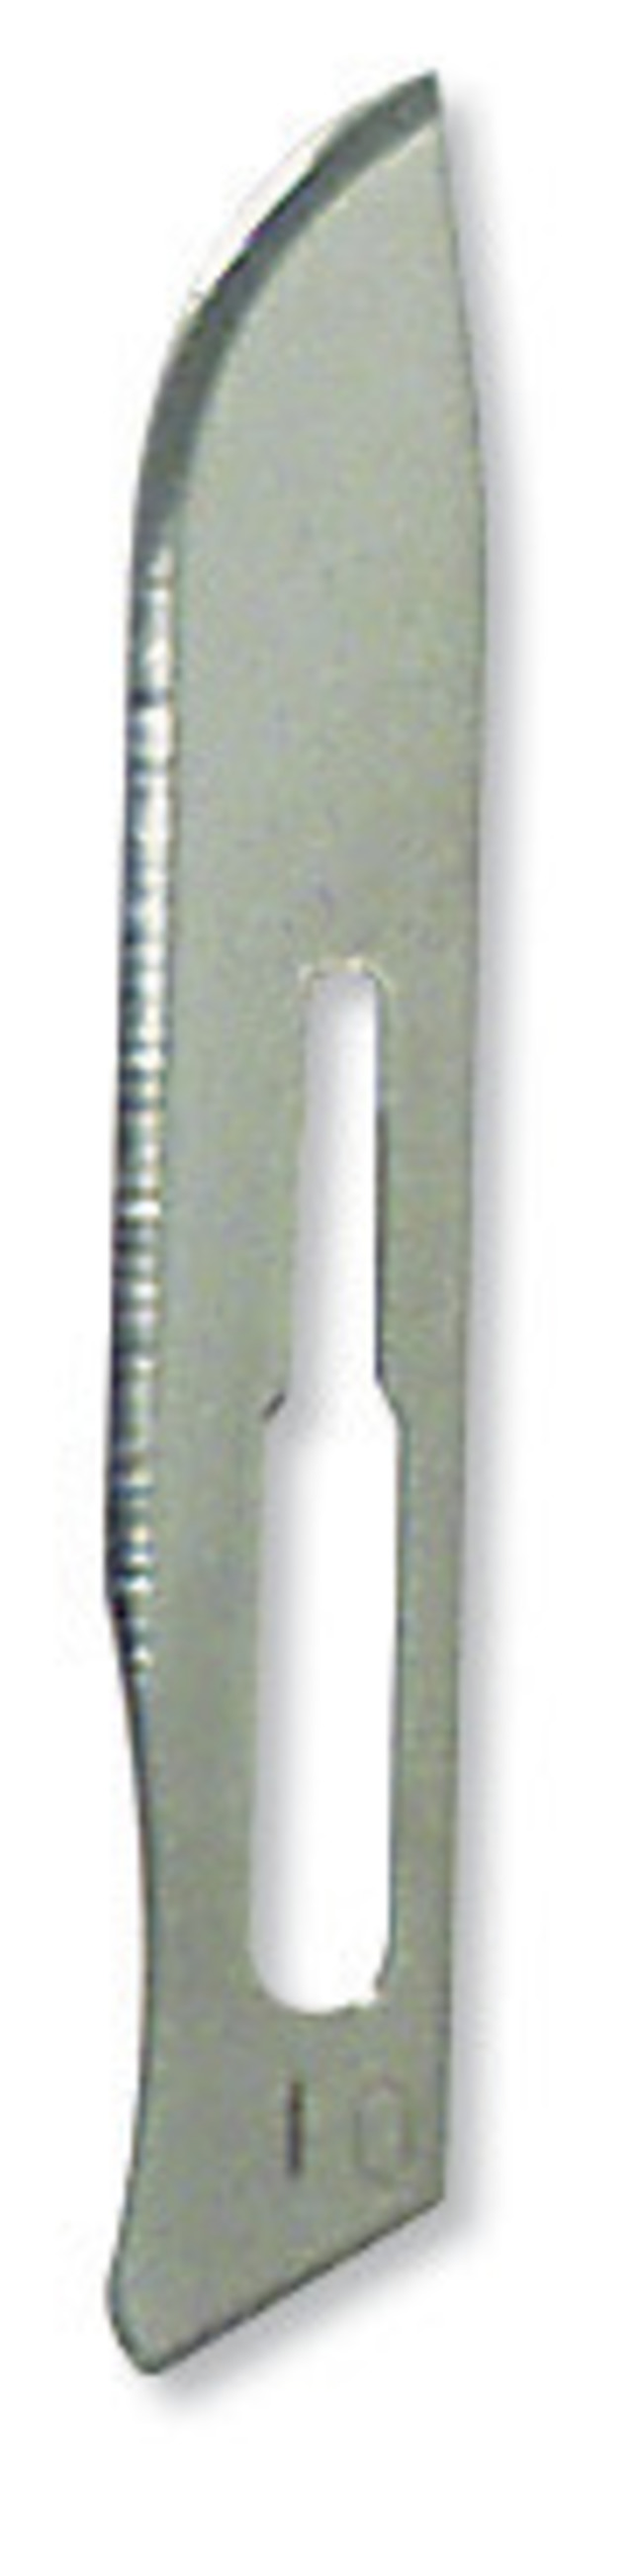 DR Instruments Scalpel Blades, Number 10, Pack of 10, Item Number 573189